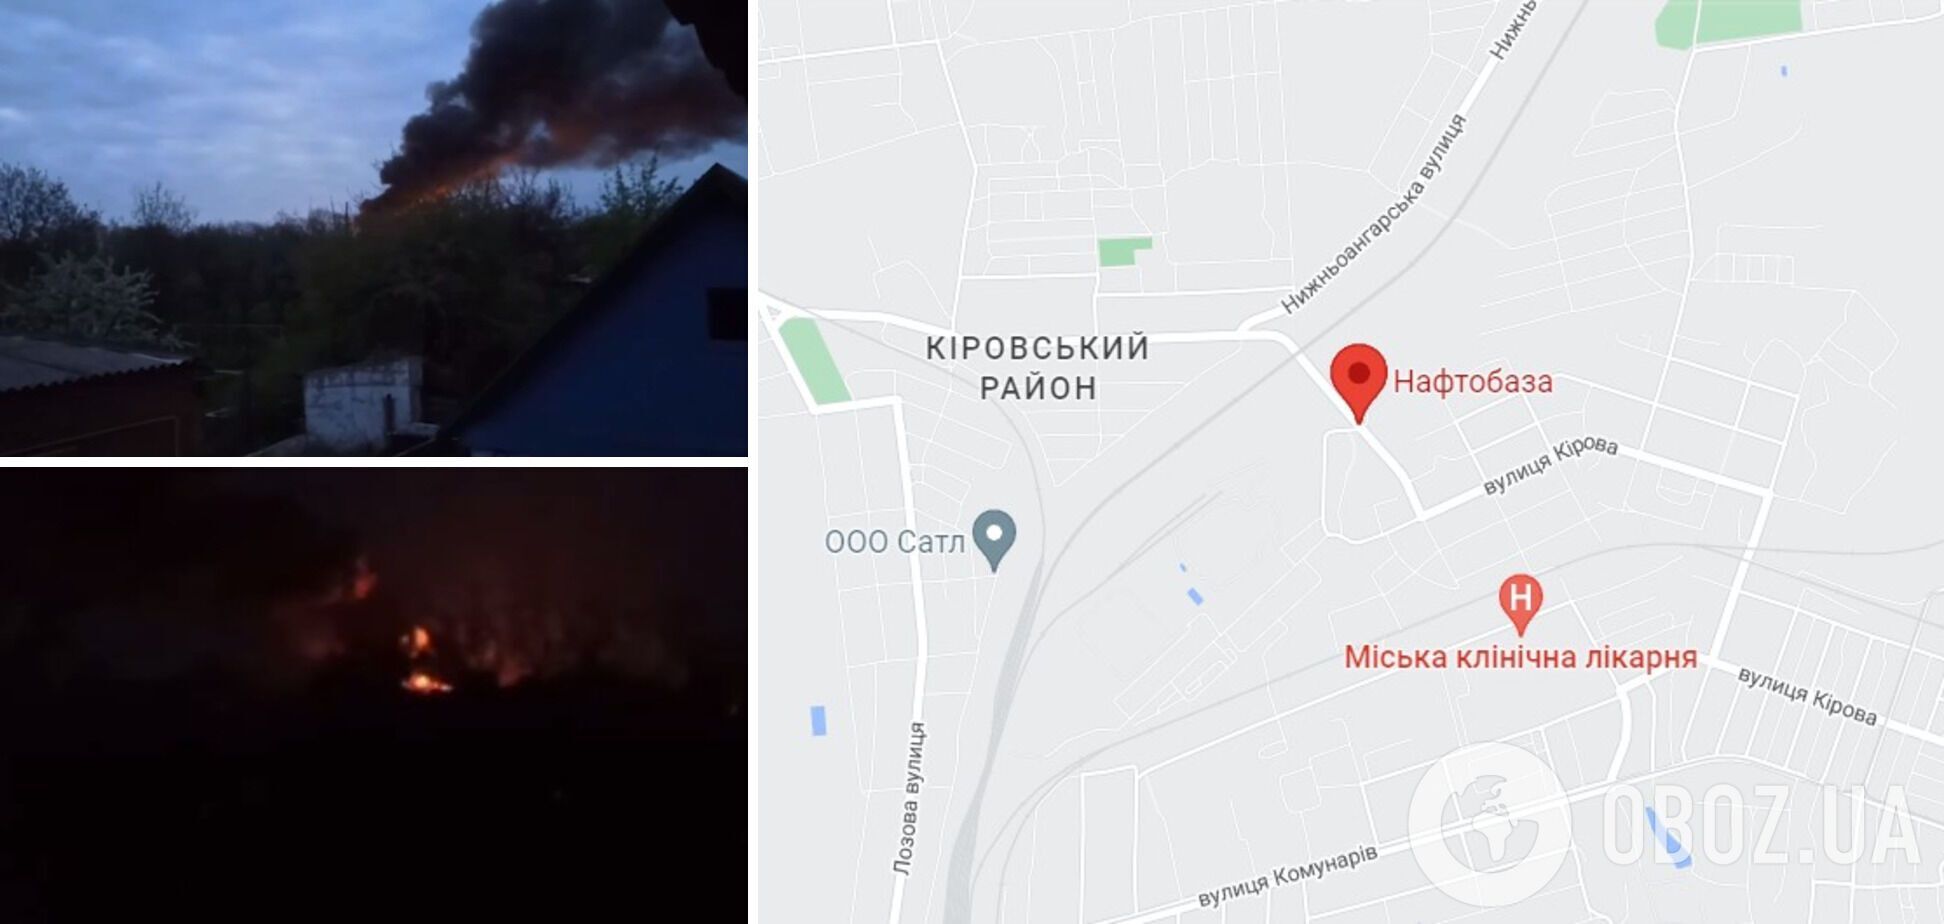 Пожежа спалахнула на нафтобазі у Кіровському районі Донецька